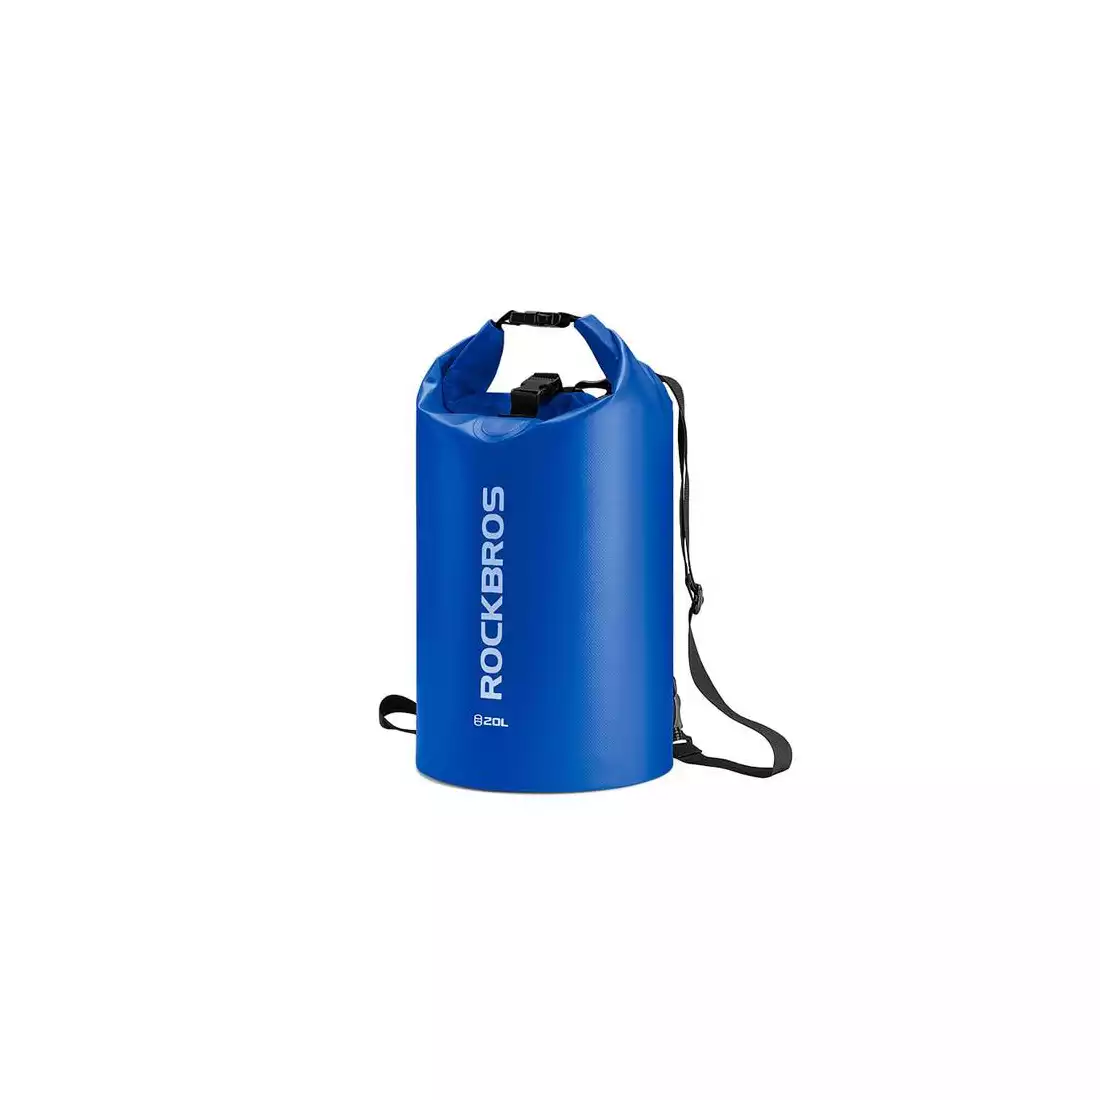 Rockbros wodoodporny plecak/worek 20L, niebieski ST-005BL